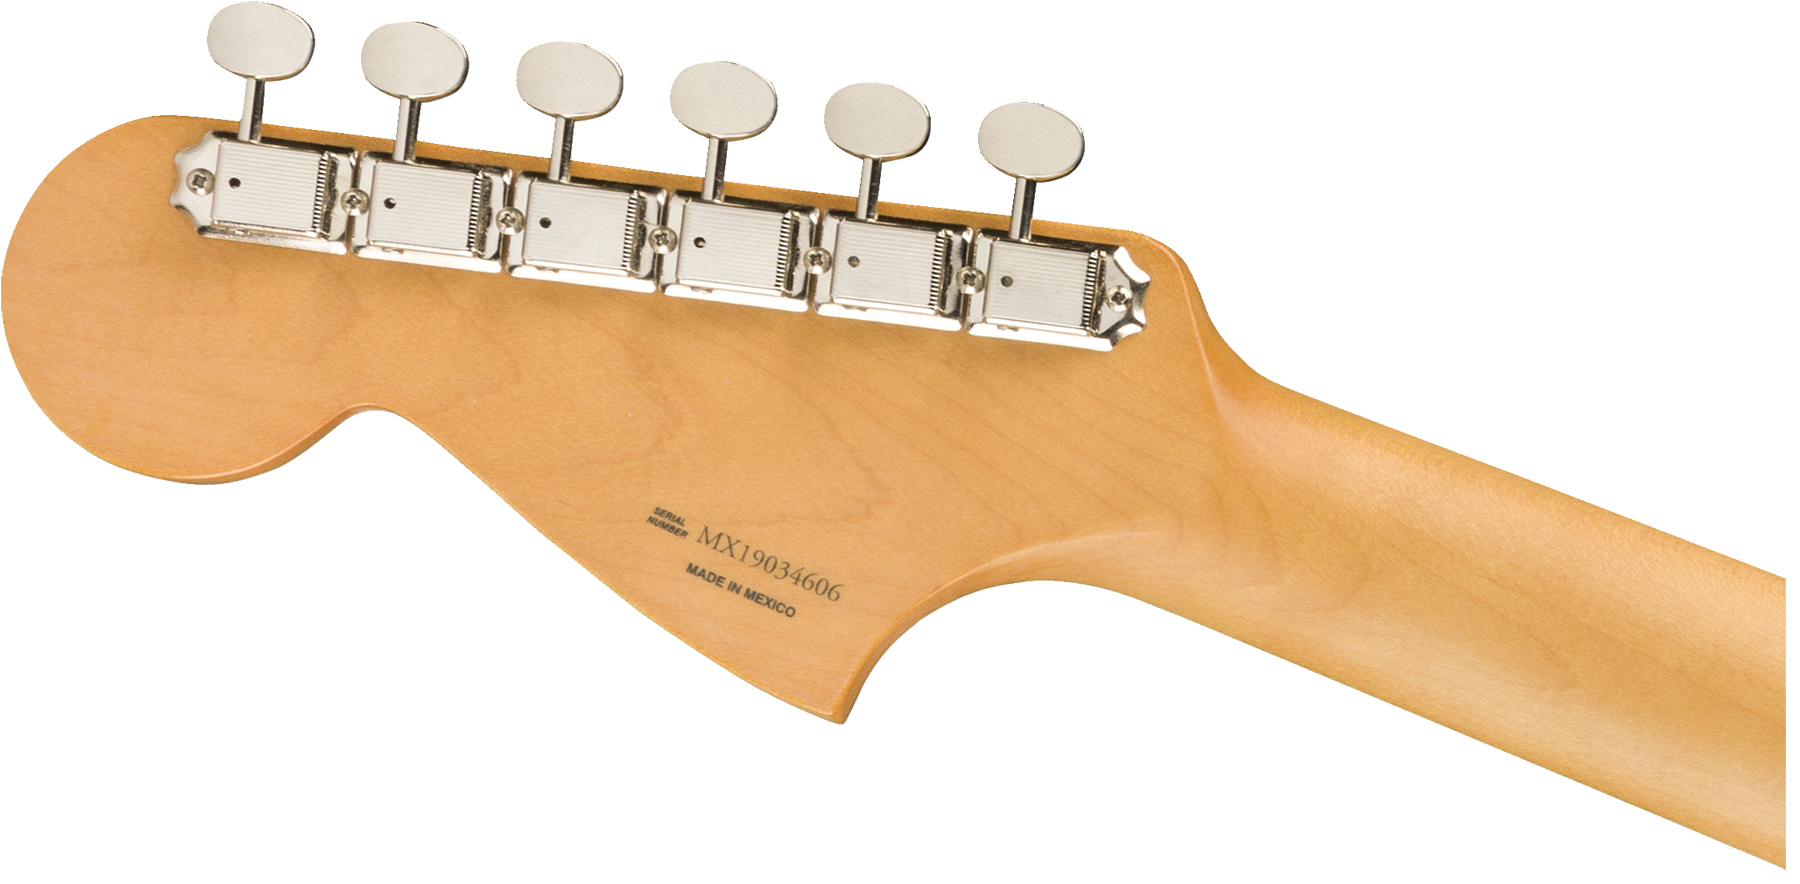 Fender Jaguar 60s Vintera Modified Hh Mex Pf - Surf Green - Guitarra electrica retro rock - Variation 2